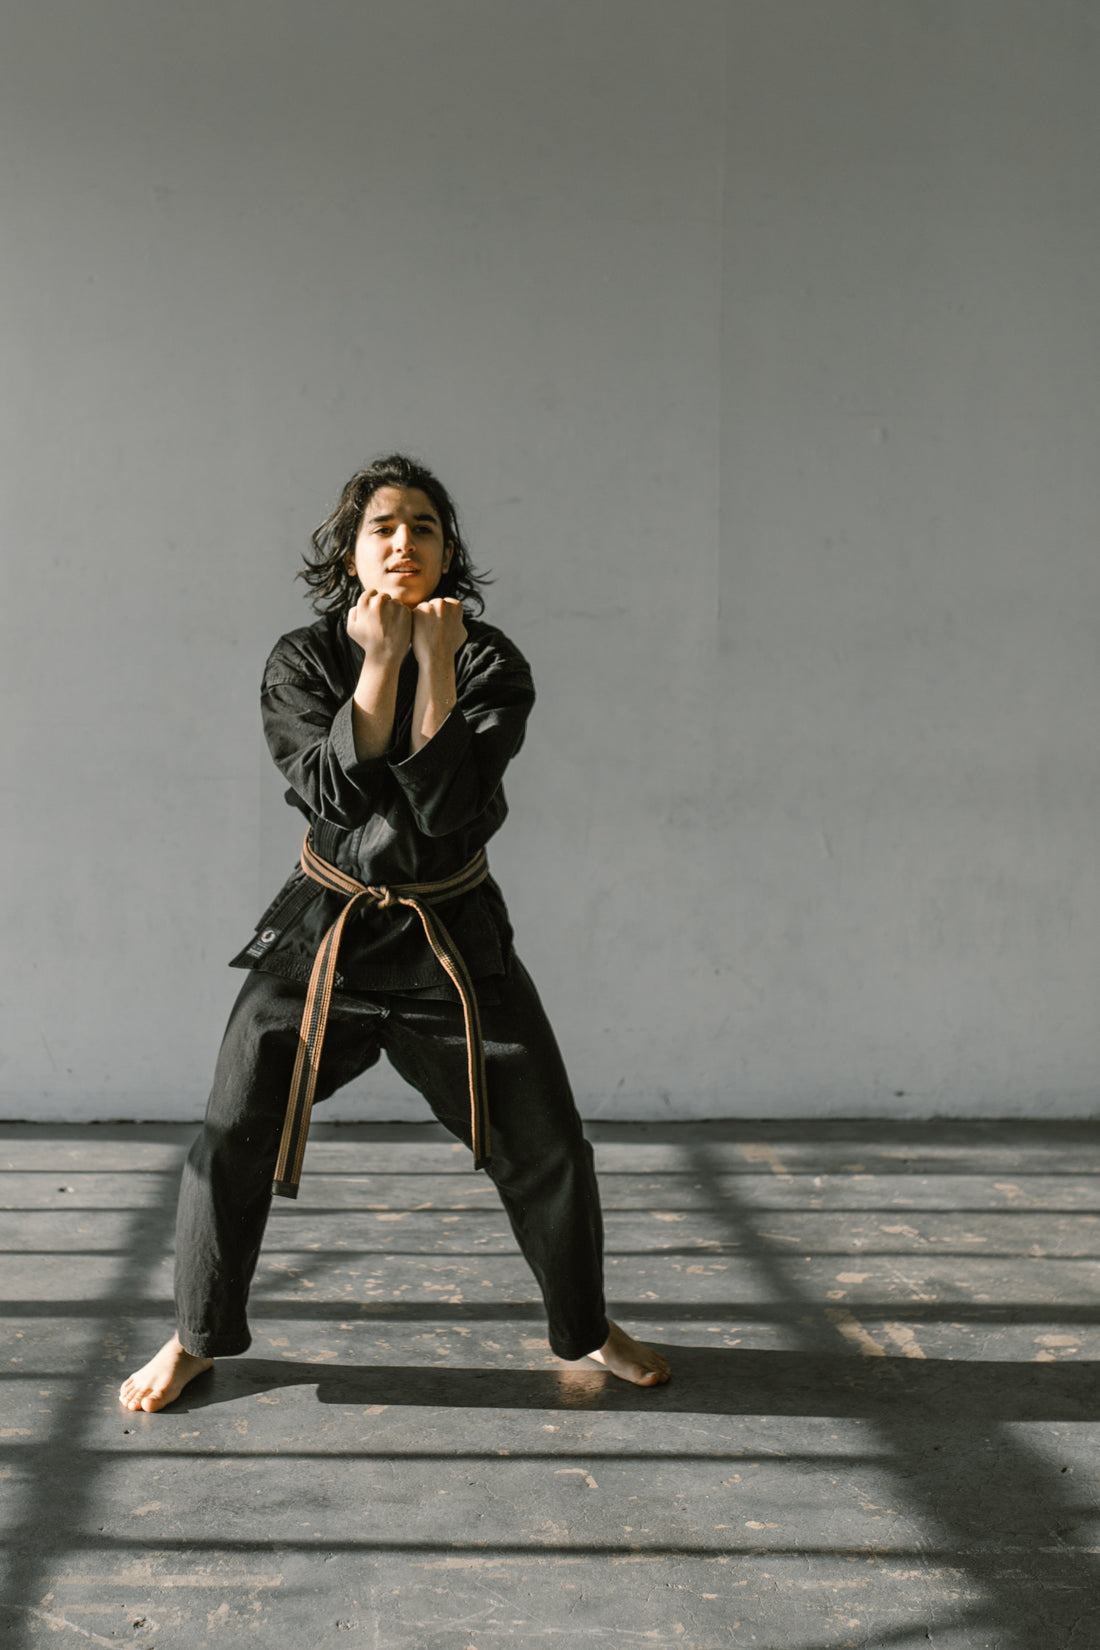 judo as a martial art